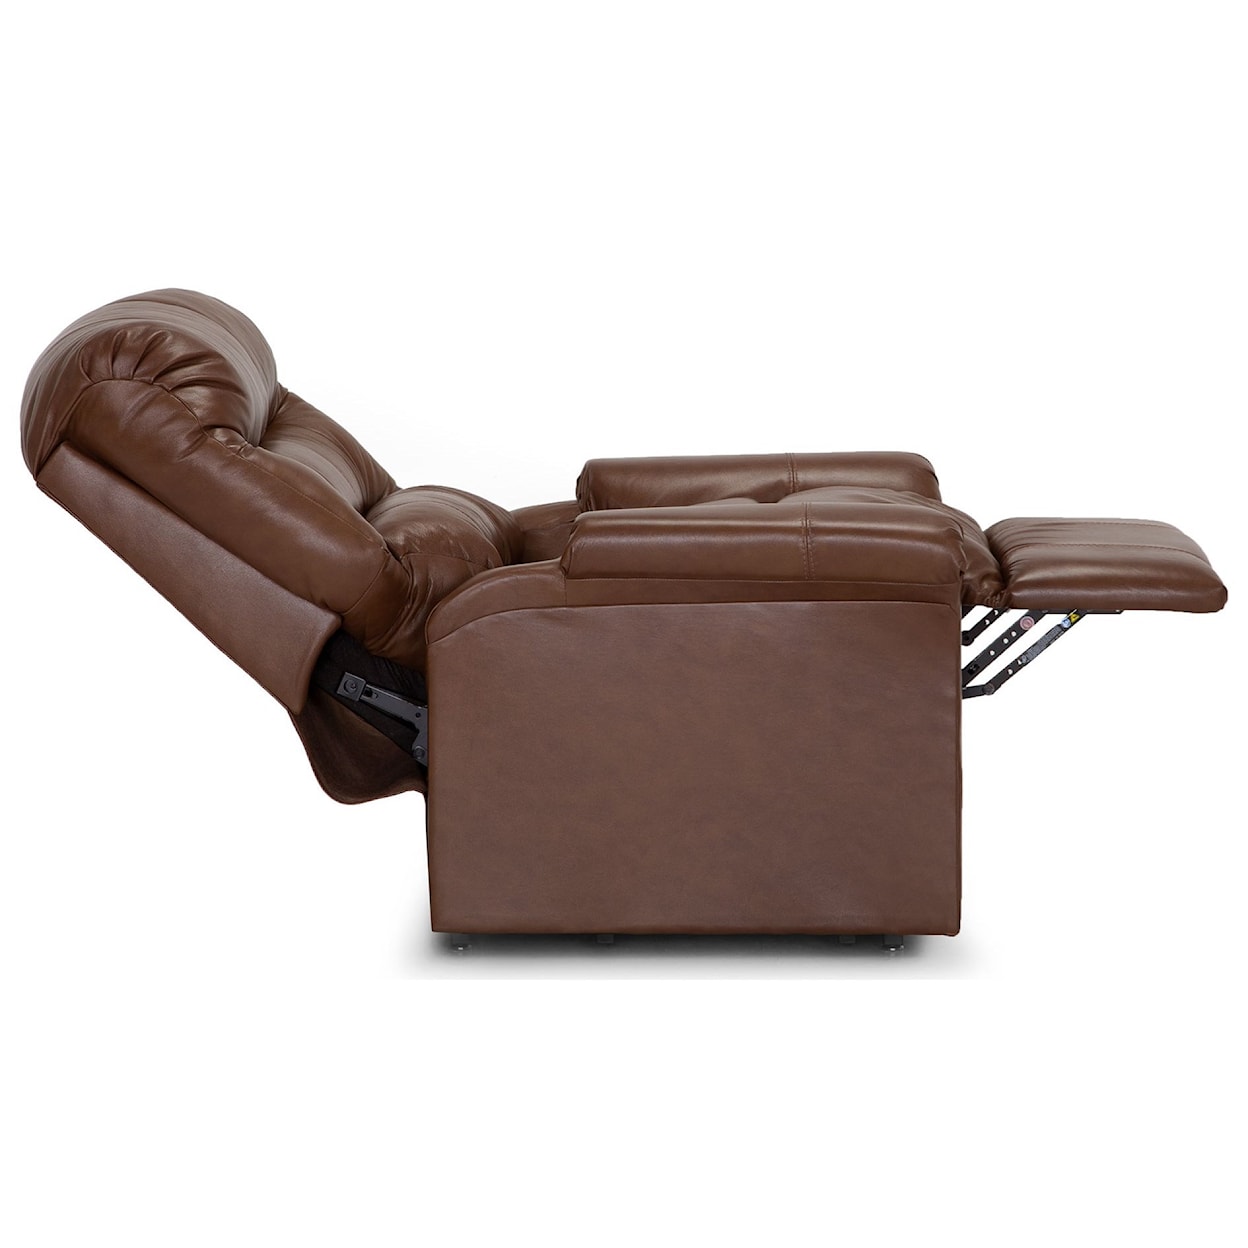 Franklin 497 Hewett Hewett Leather Lift Chair